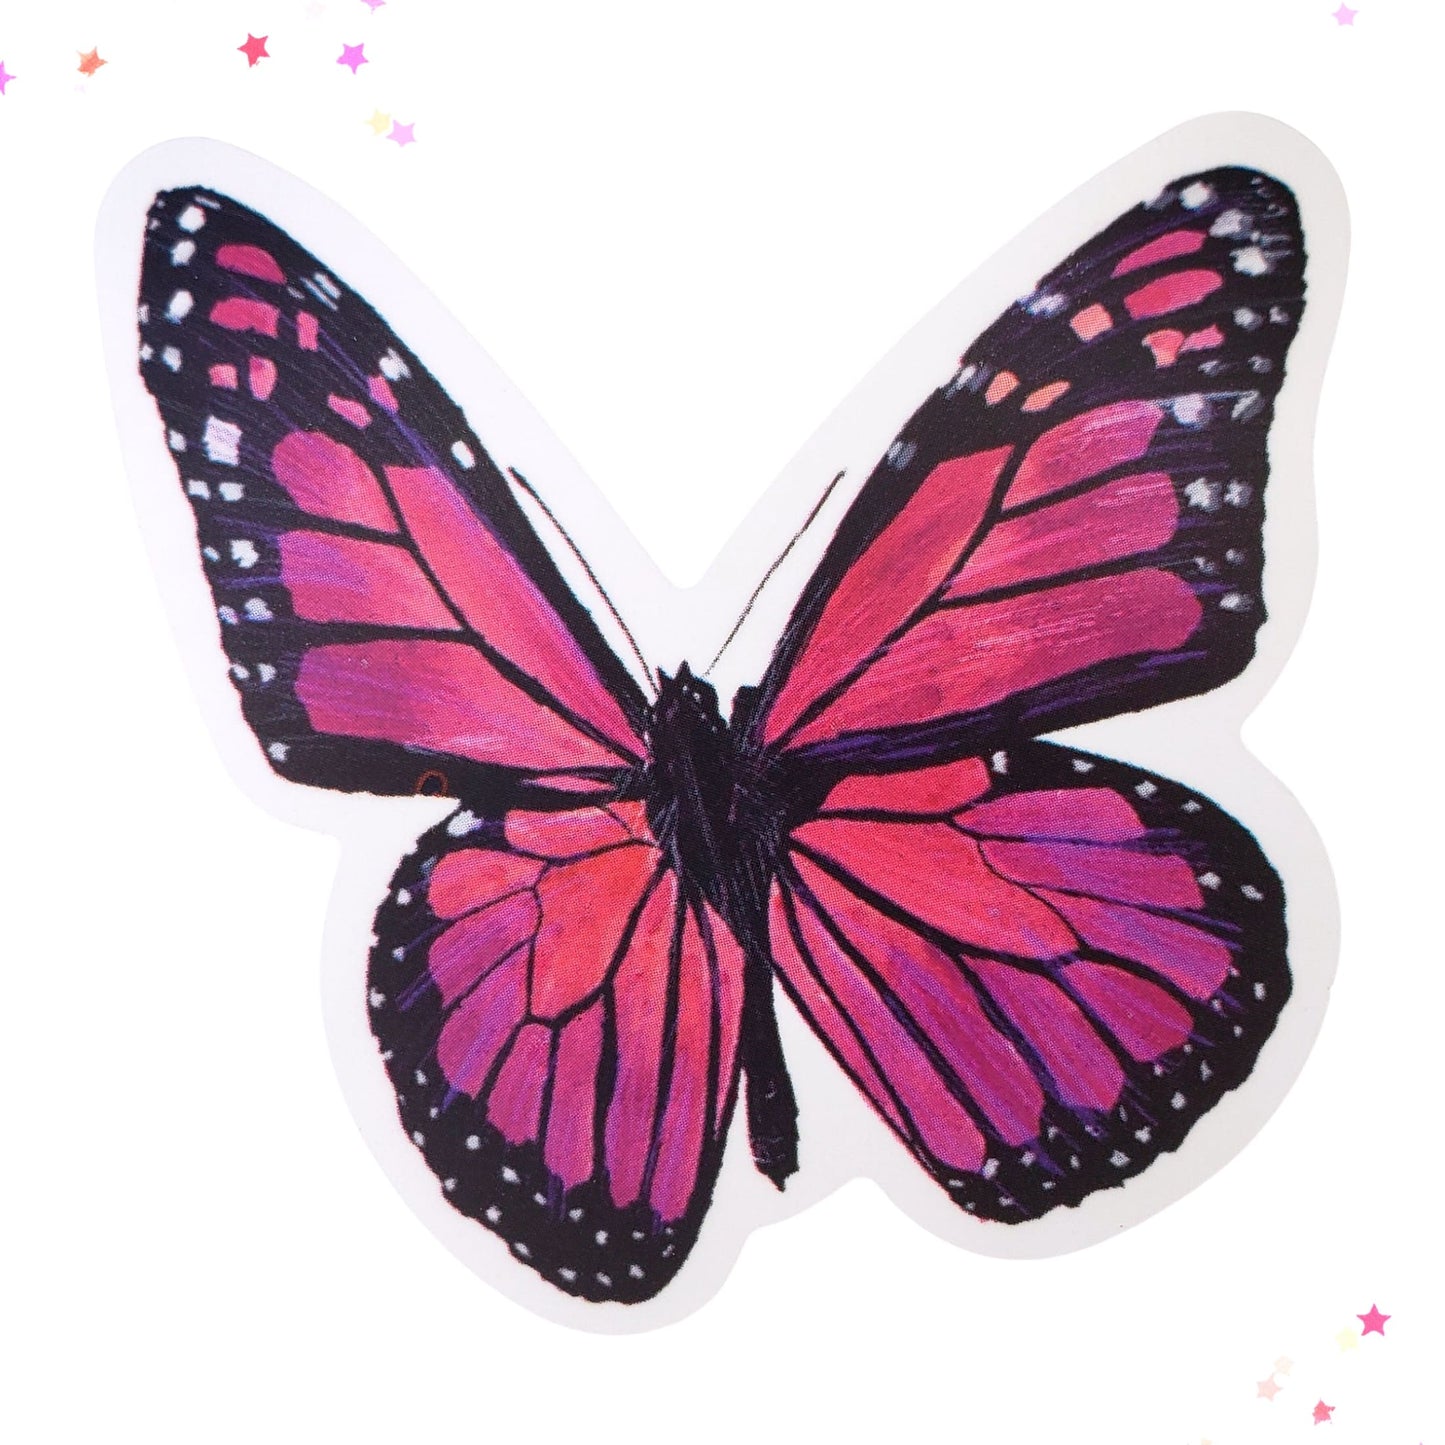 Magenta Wings Butterfly Waterproof Sticker from Confetti Kitty, Only 1.00